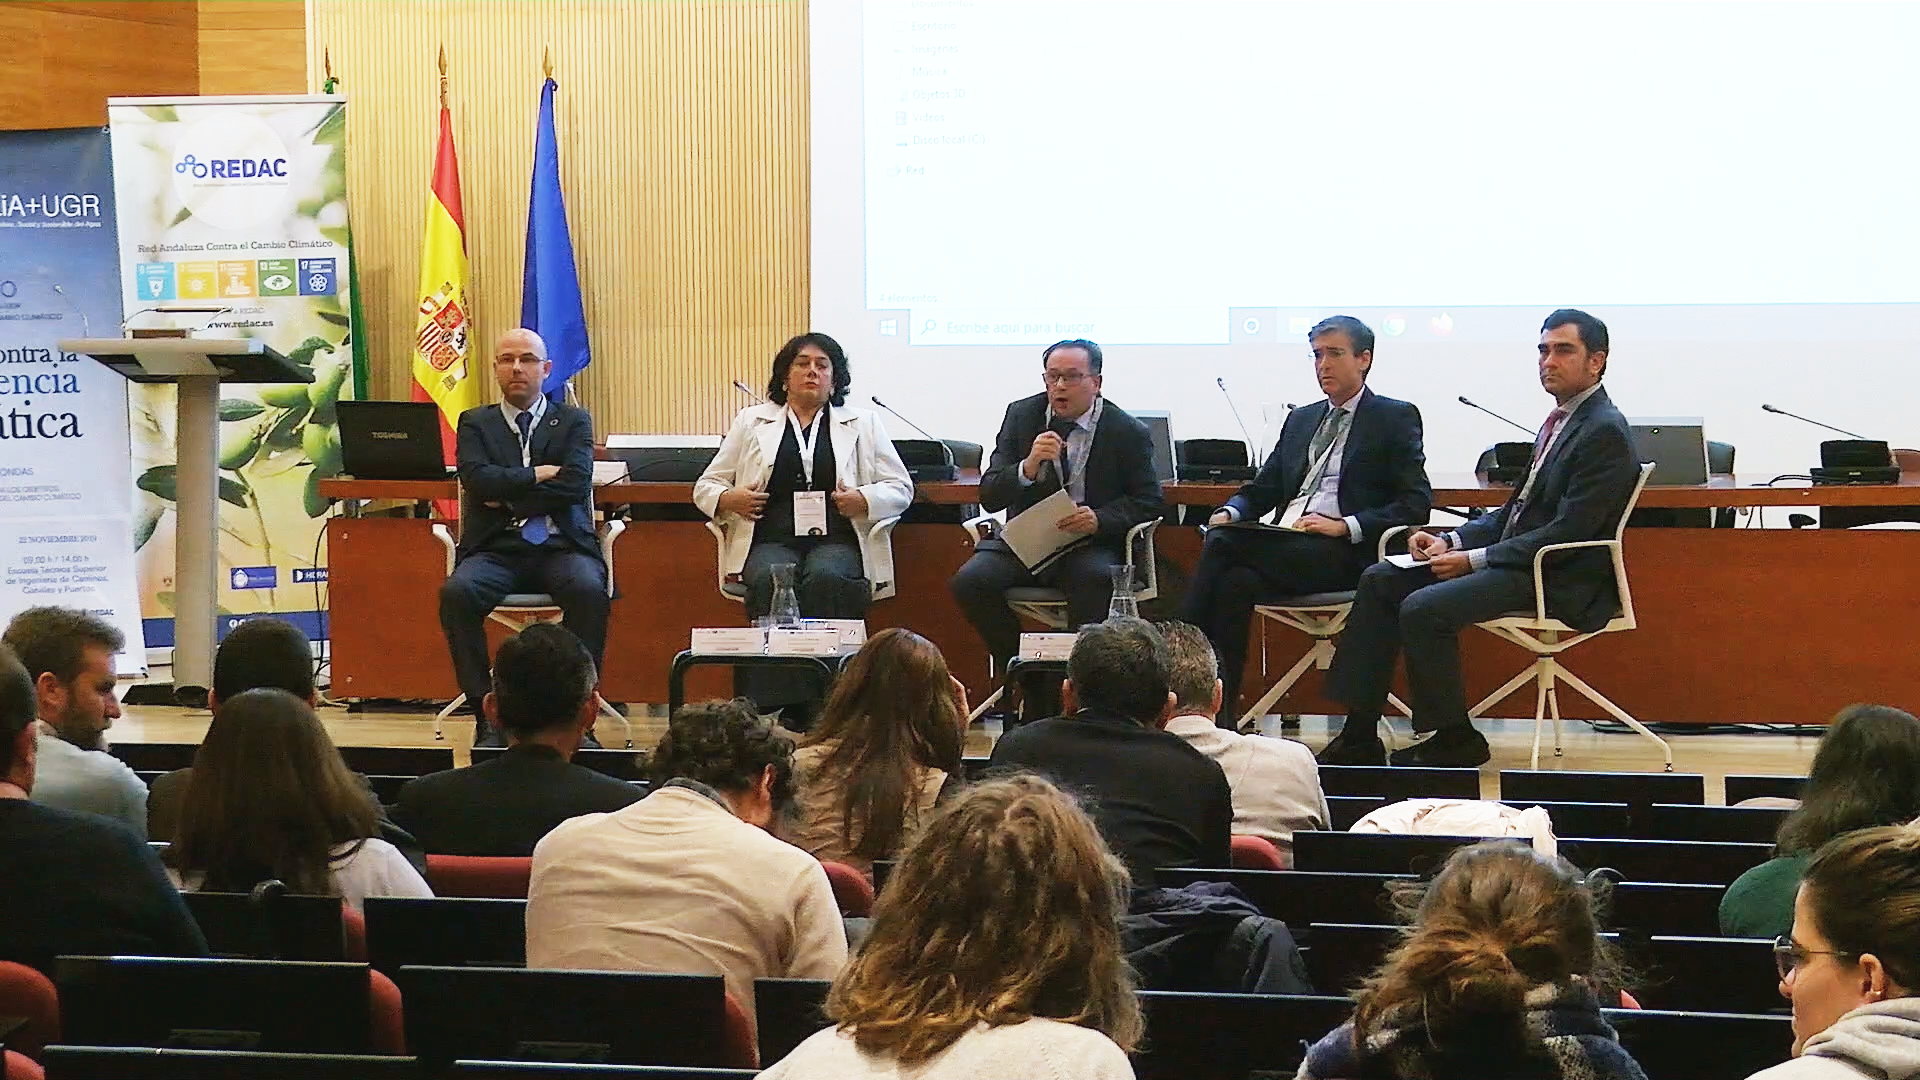 Hidralia recibe el Premio Medio Ambiente de Andalucía 2020 por su proyecto REDAC junto la Cátedra Hidralia+UGR